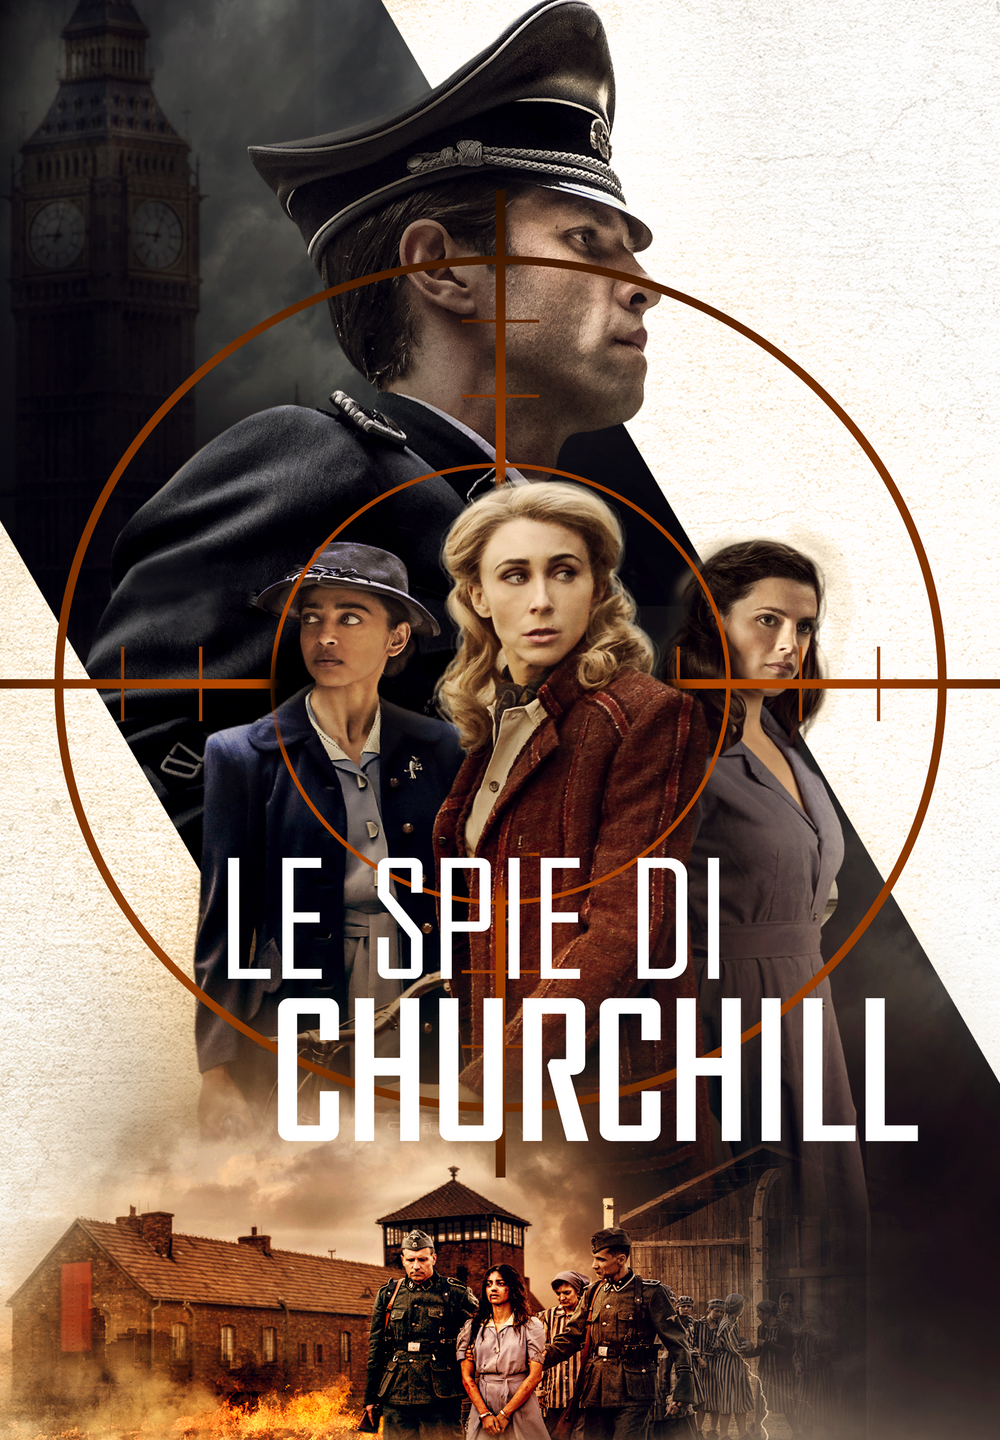 Le spie di Churchill [HD] (2020)